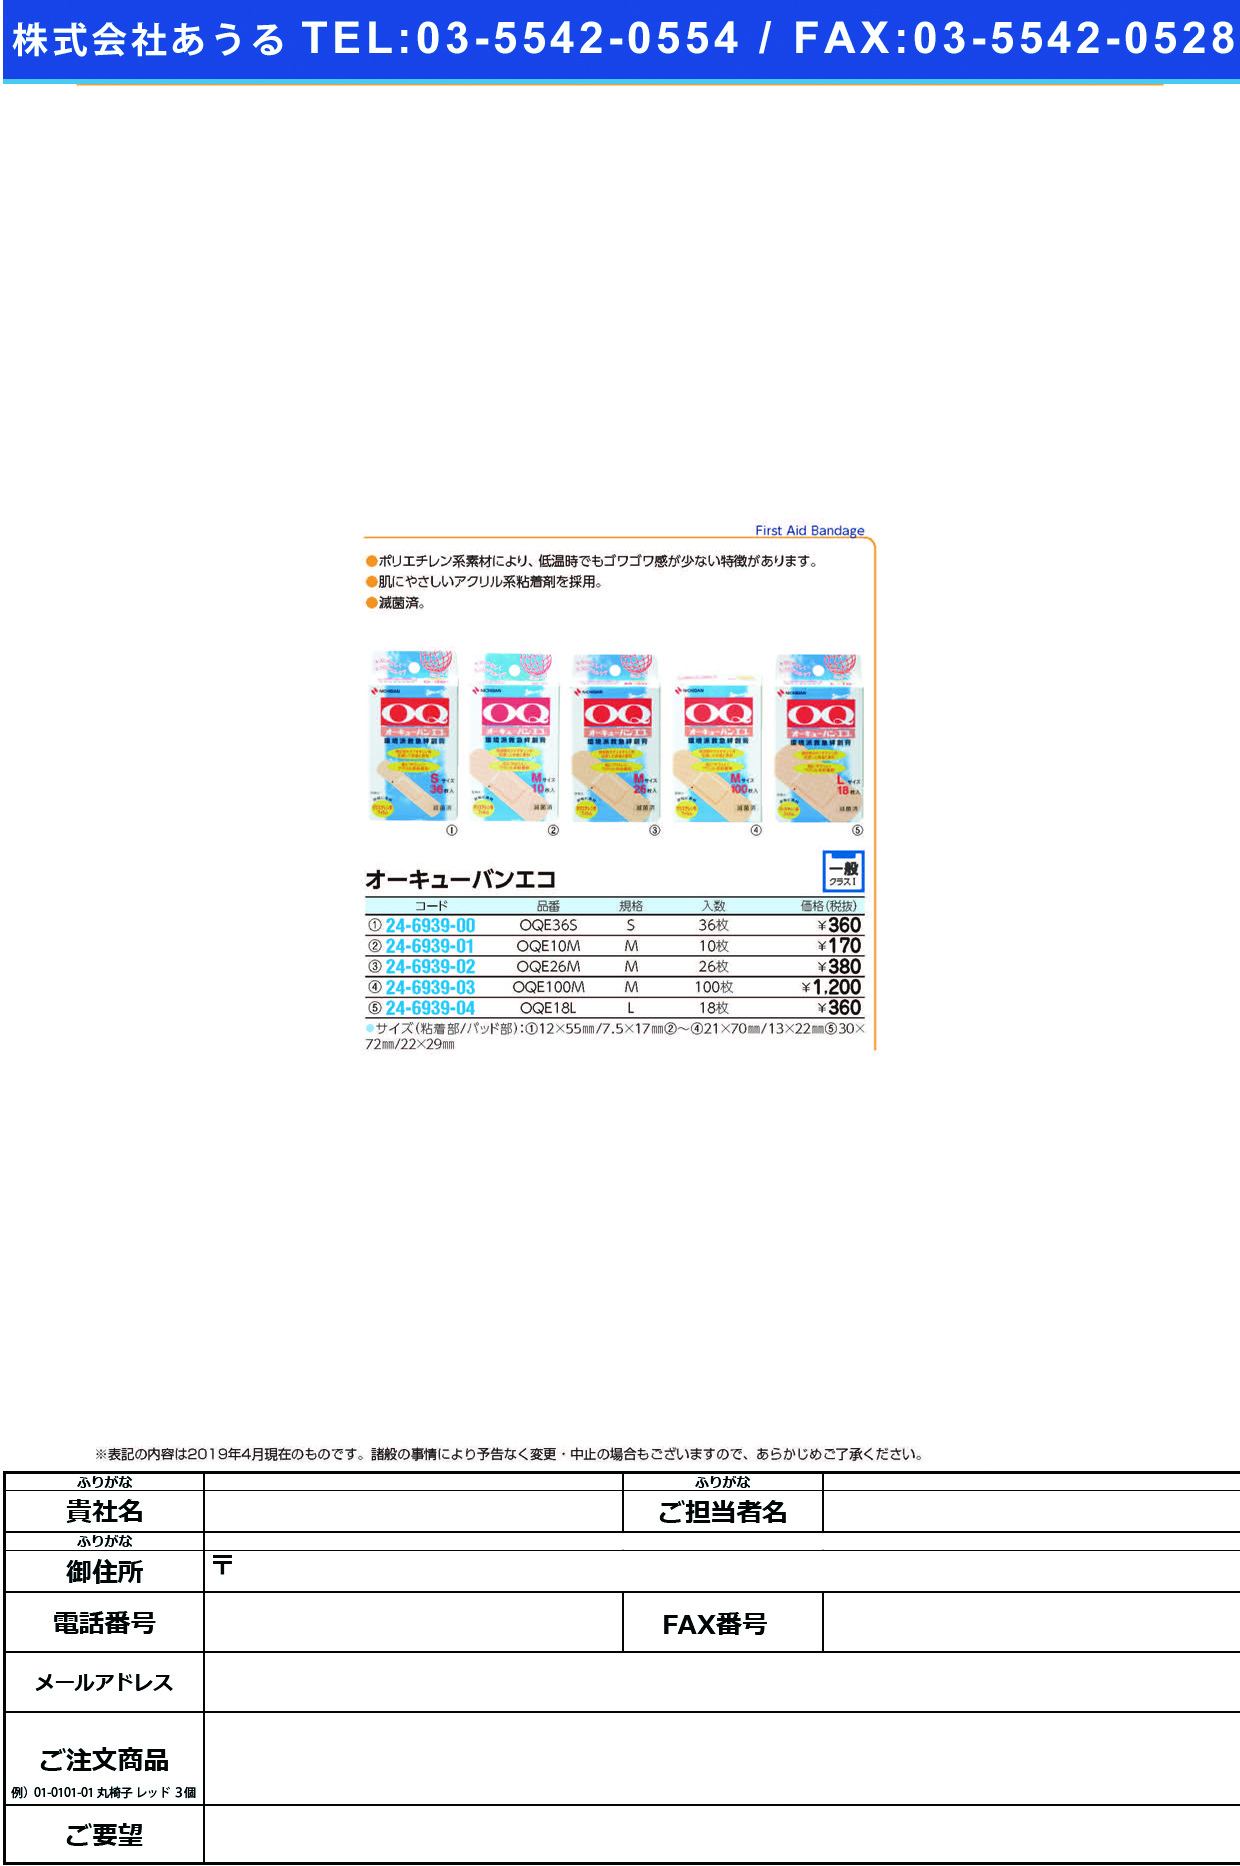 (24-6939-02)オーキューバンエコ OQE26M(M)26ﾏｲ ｵｰｷｭｰﾊﾞﾝｴｺ(ニチバン)【1個単位】【2019年カタログ商品】